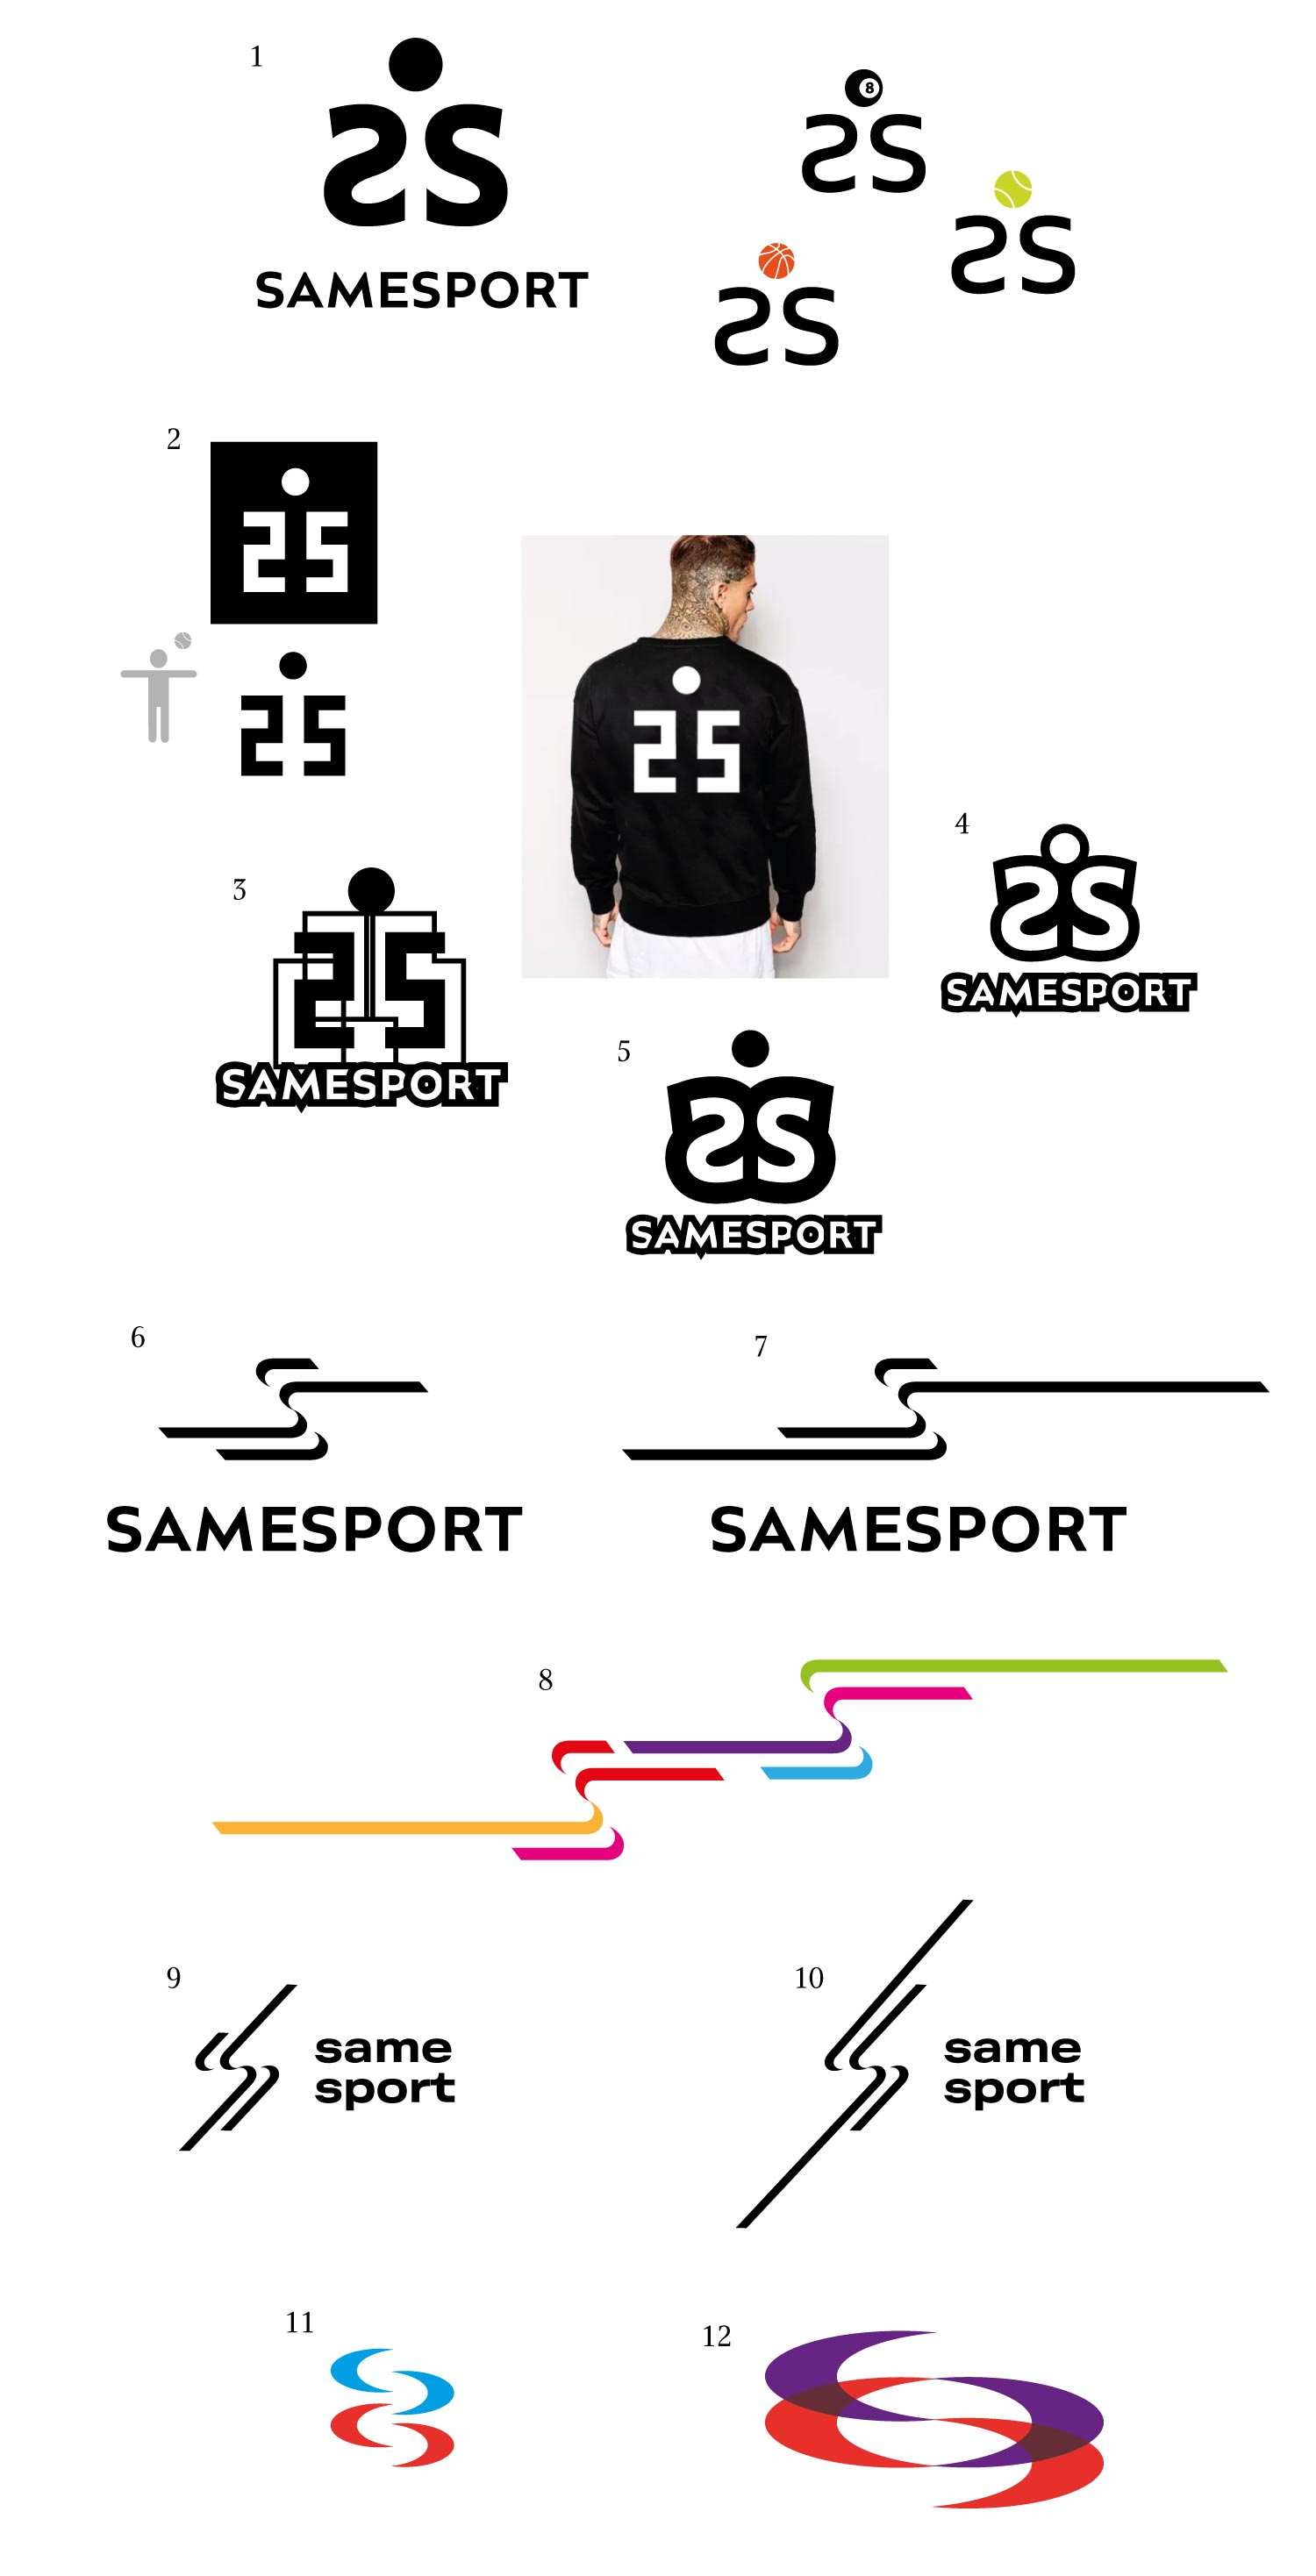 samesport process 01